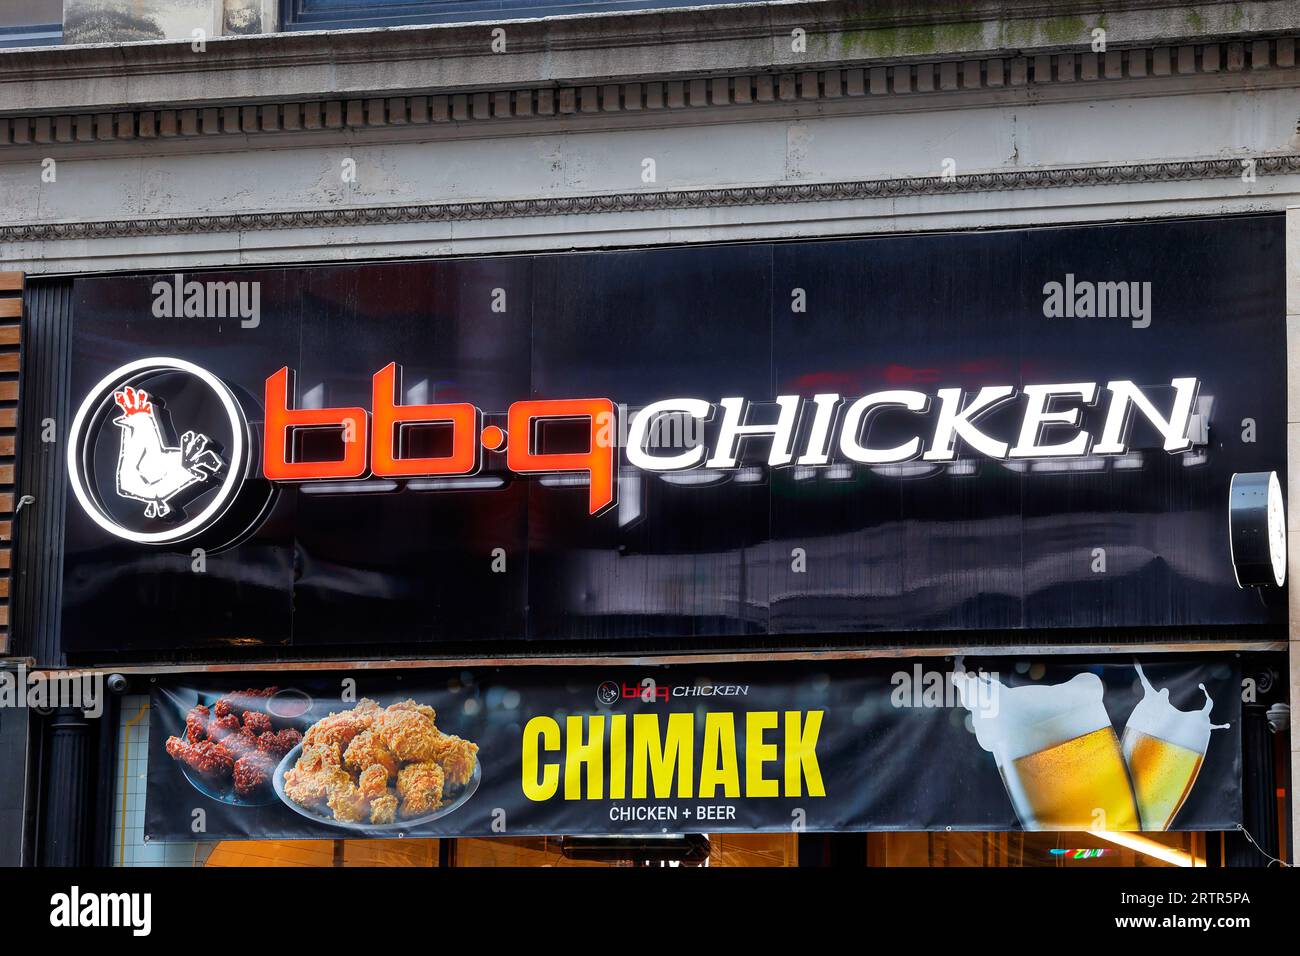 Signalisation pour bb.q Chicken, une marque coréenne de poulet frit, dans un magasin de franchise à Koreatown, New York Banque D'Images